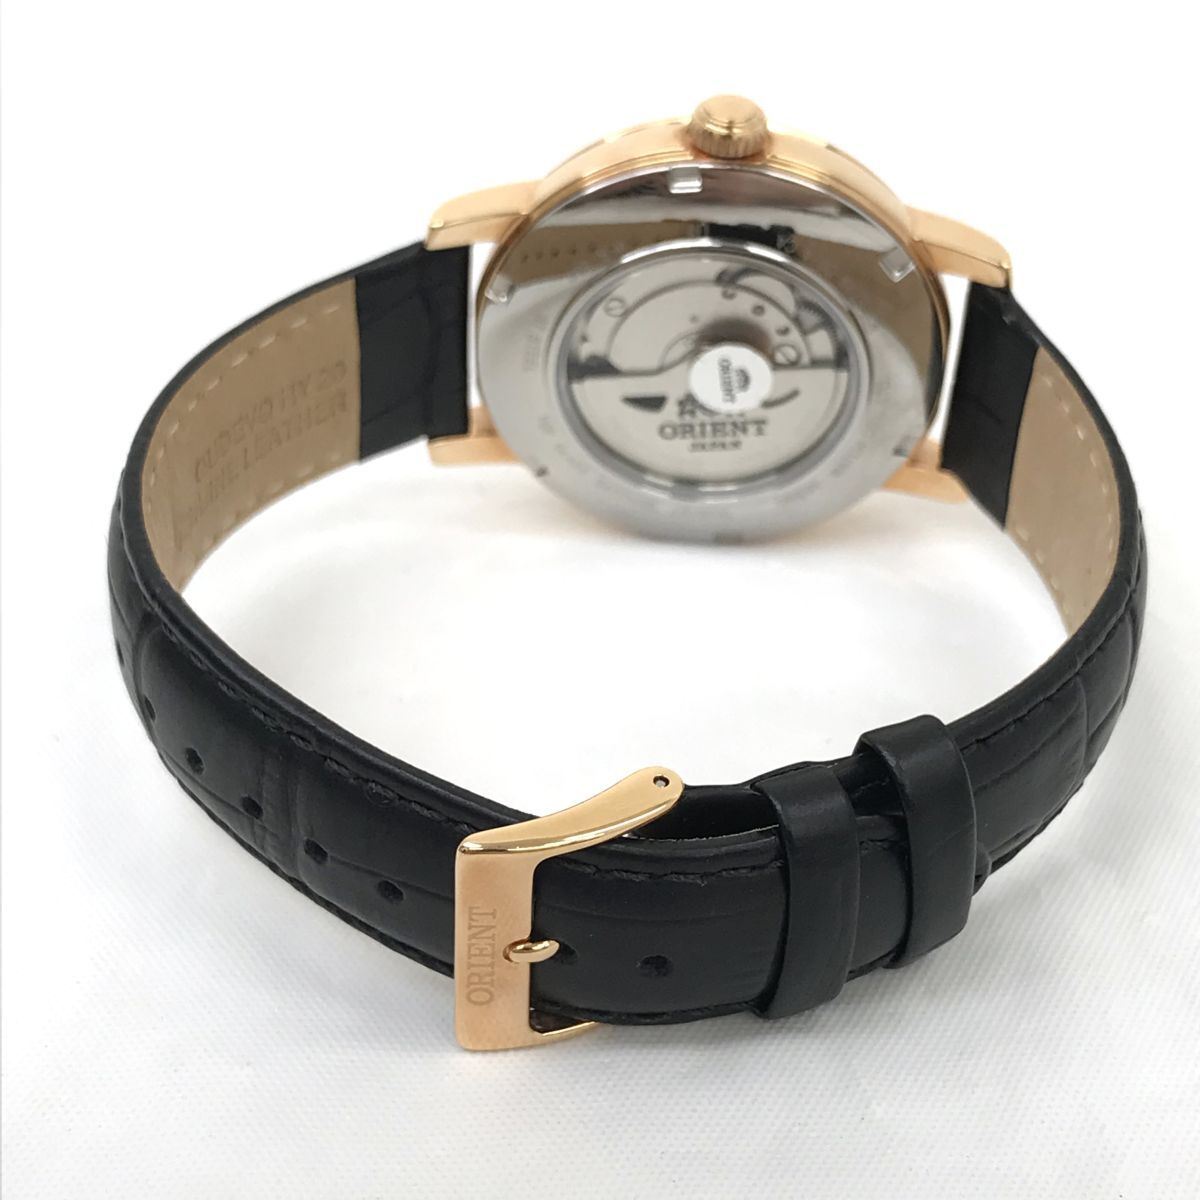  новый товар ORIENT Orient наручные часы EZ09-D0 самозаводящиеся часы автоматический автоматический дыра ro ground Gold коллекция с коробкой работа OK